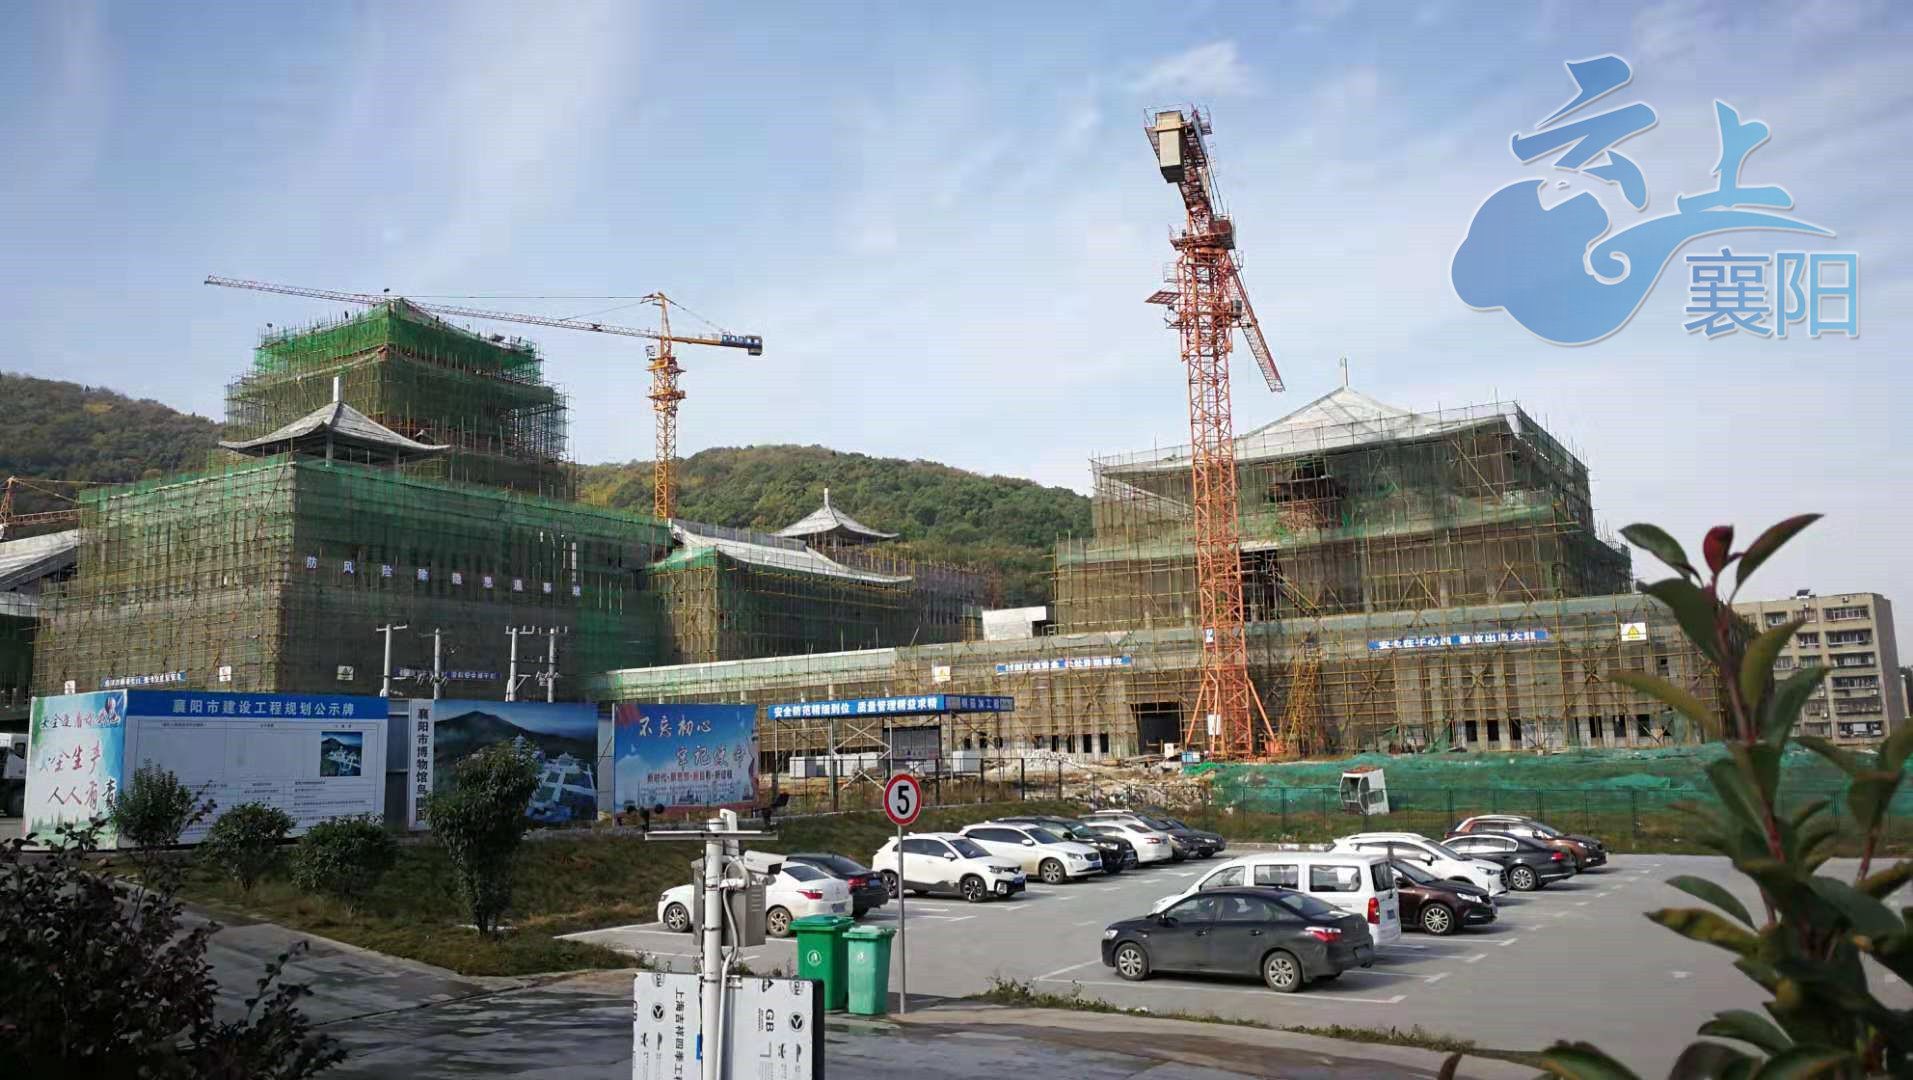 襄阳市博物馆新馆主体本月封顶 明年这里将再现一座微缩版襄阳古城